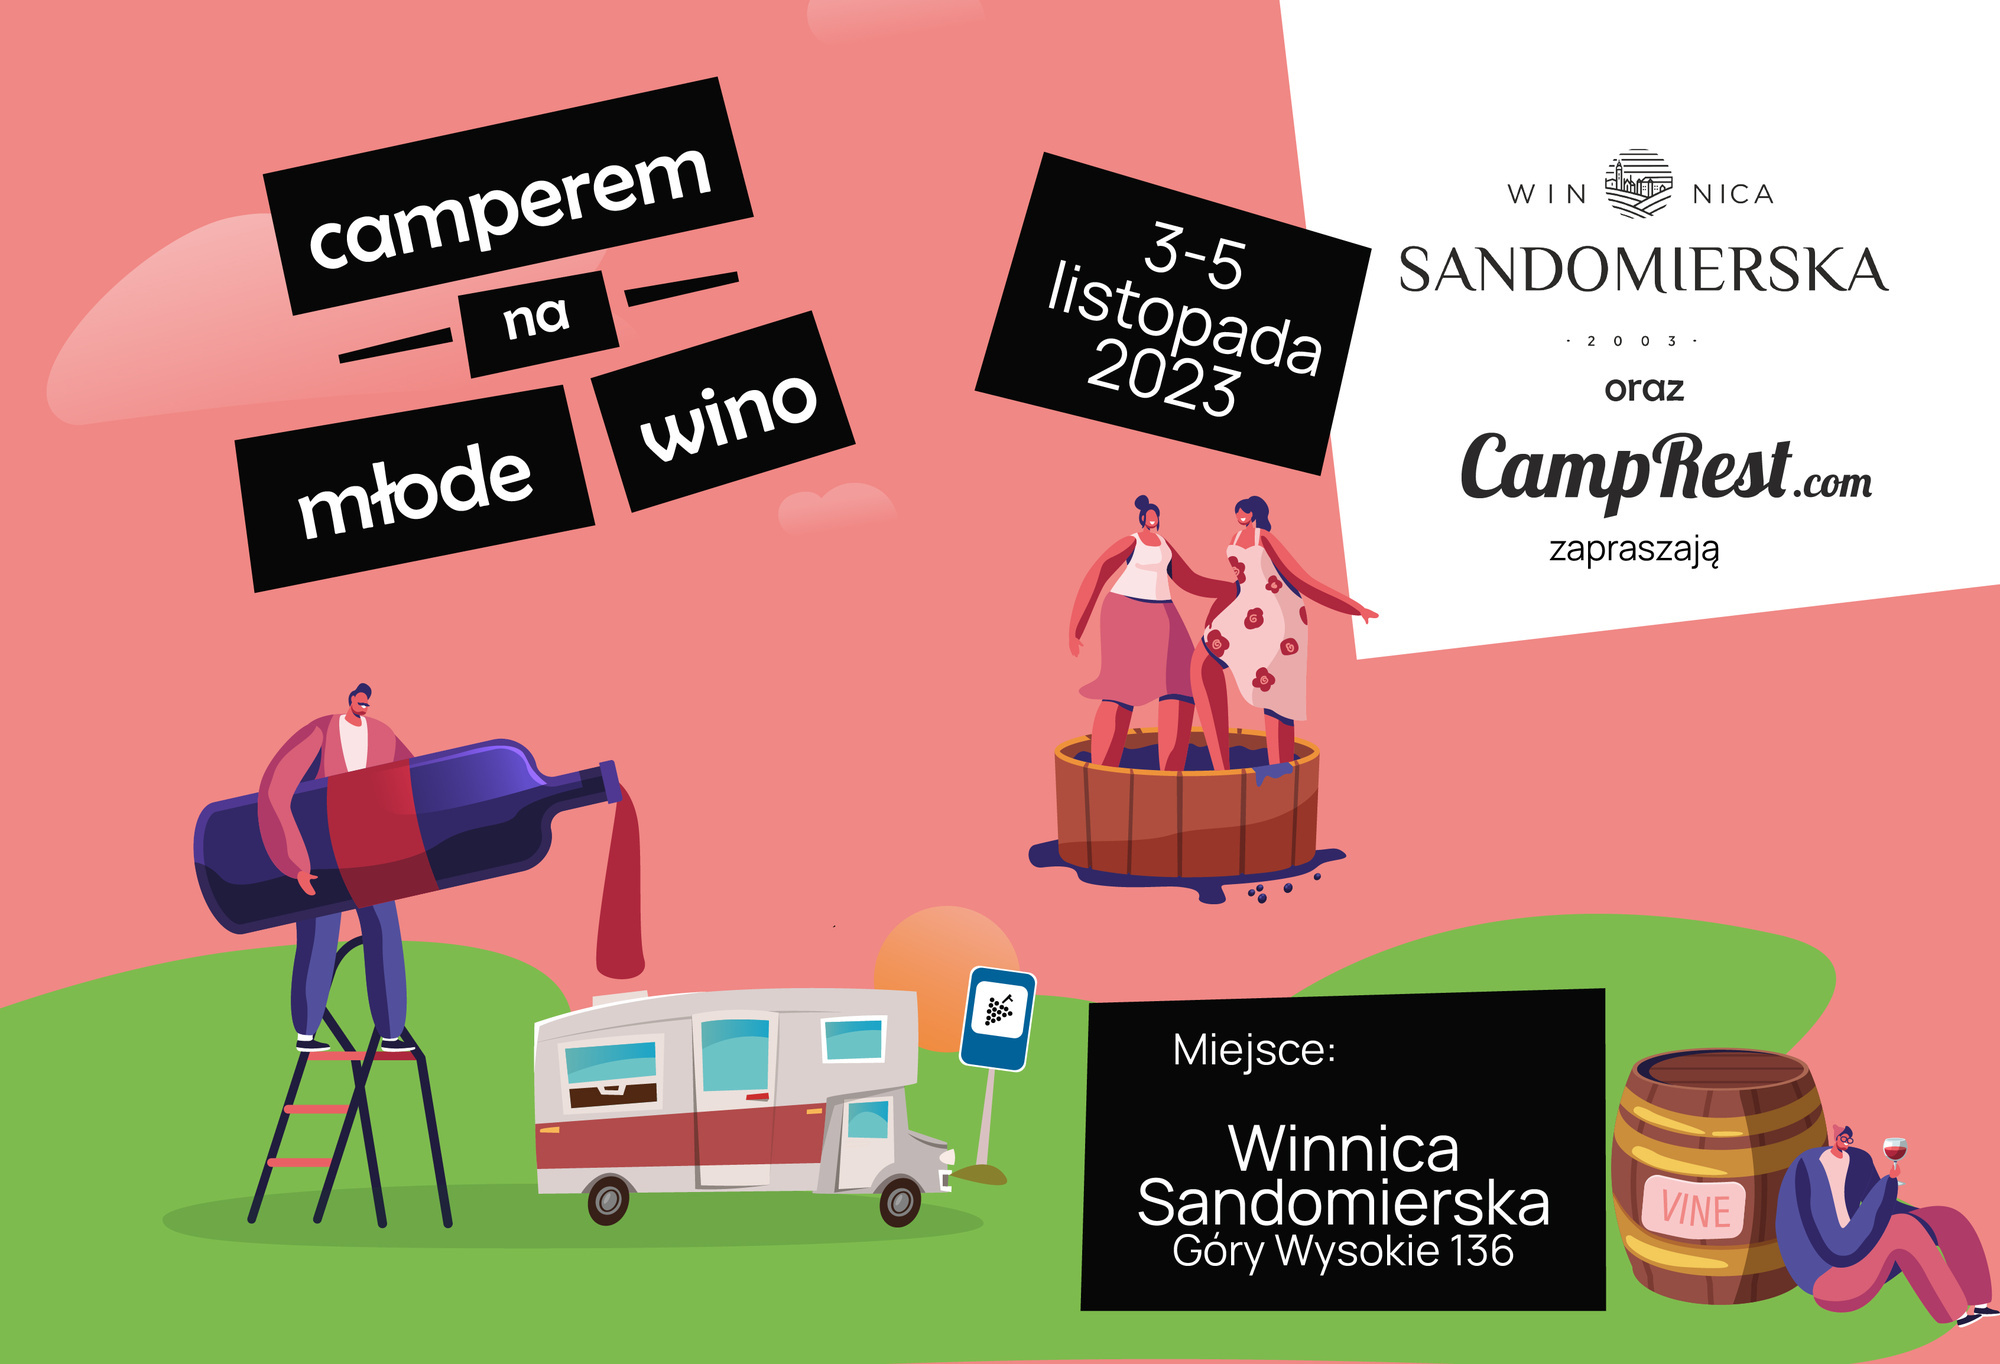 By camper for new wine to Vineyard Sandomierska – main image